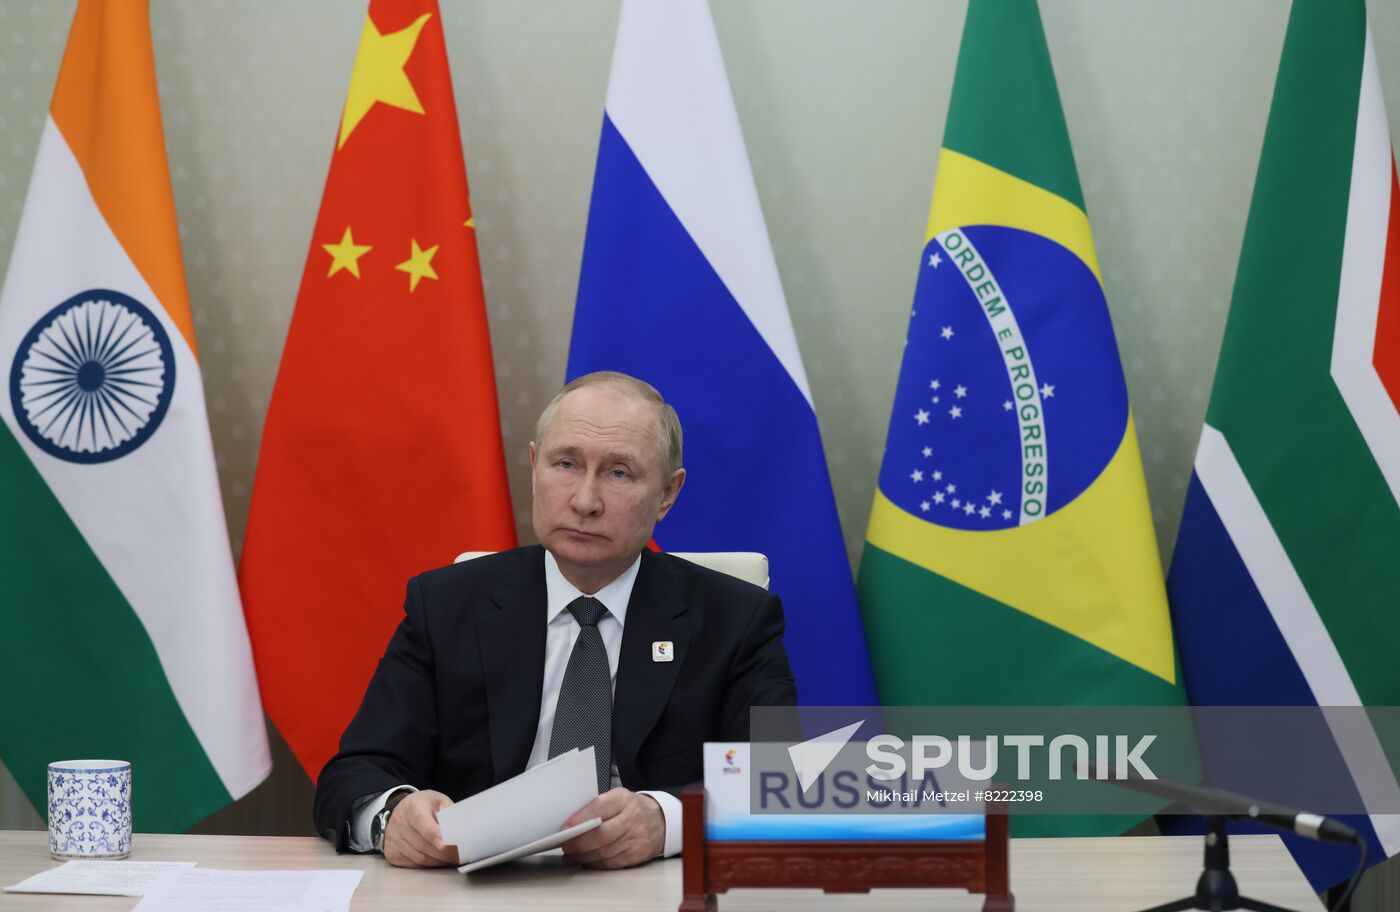 Russia Putin BRICS Summit